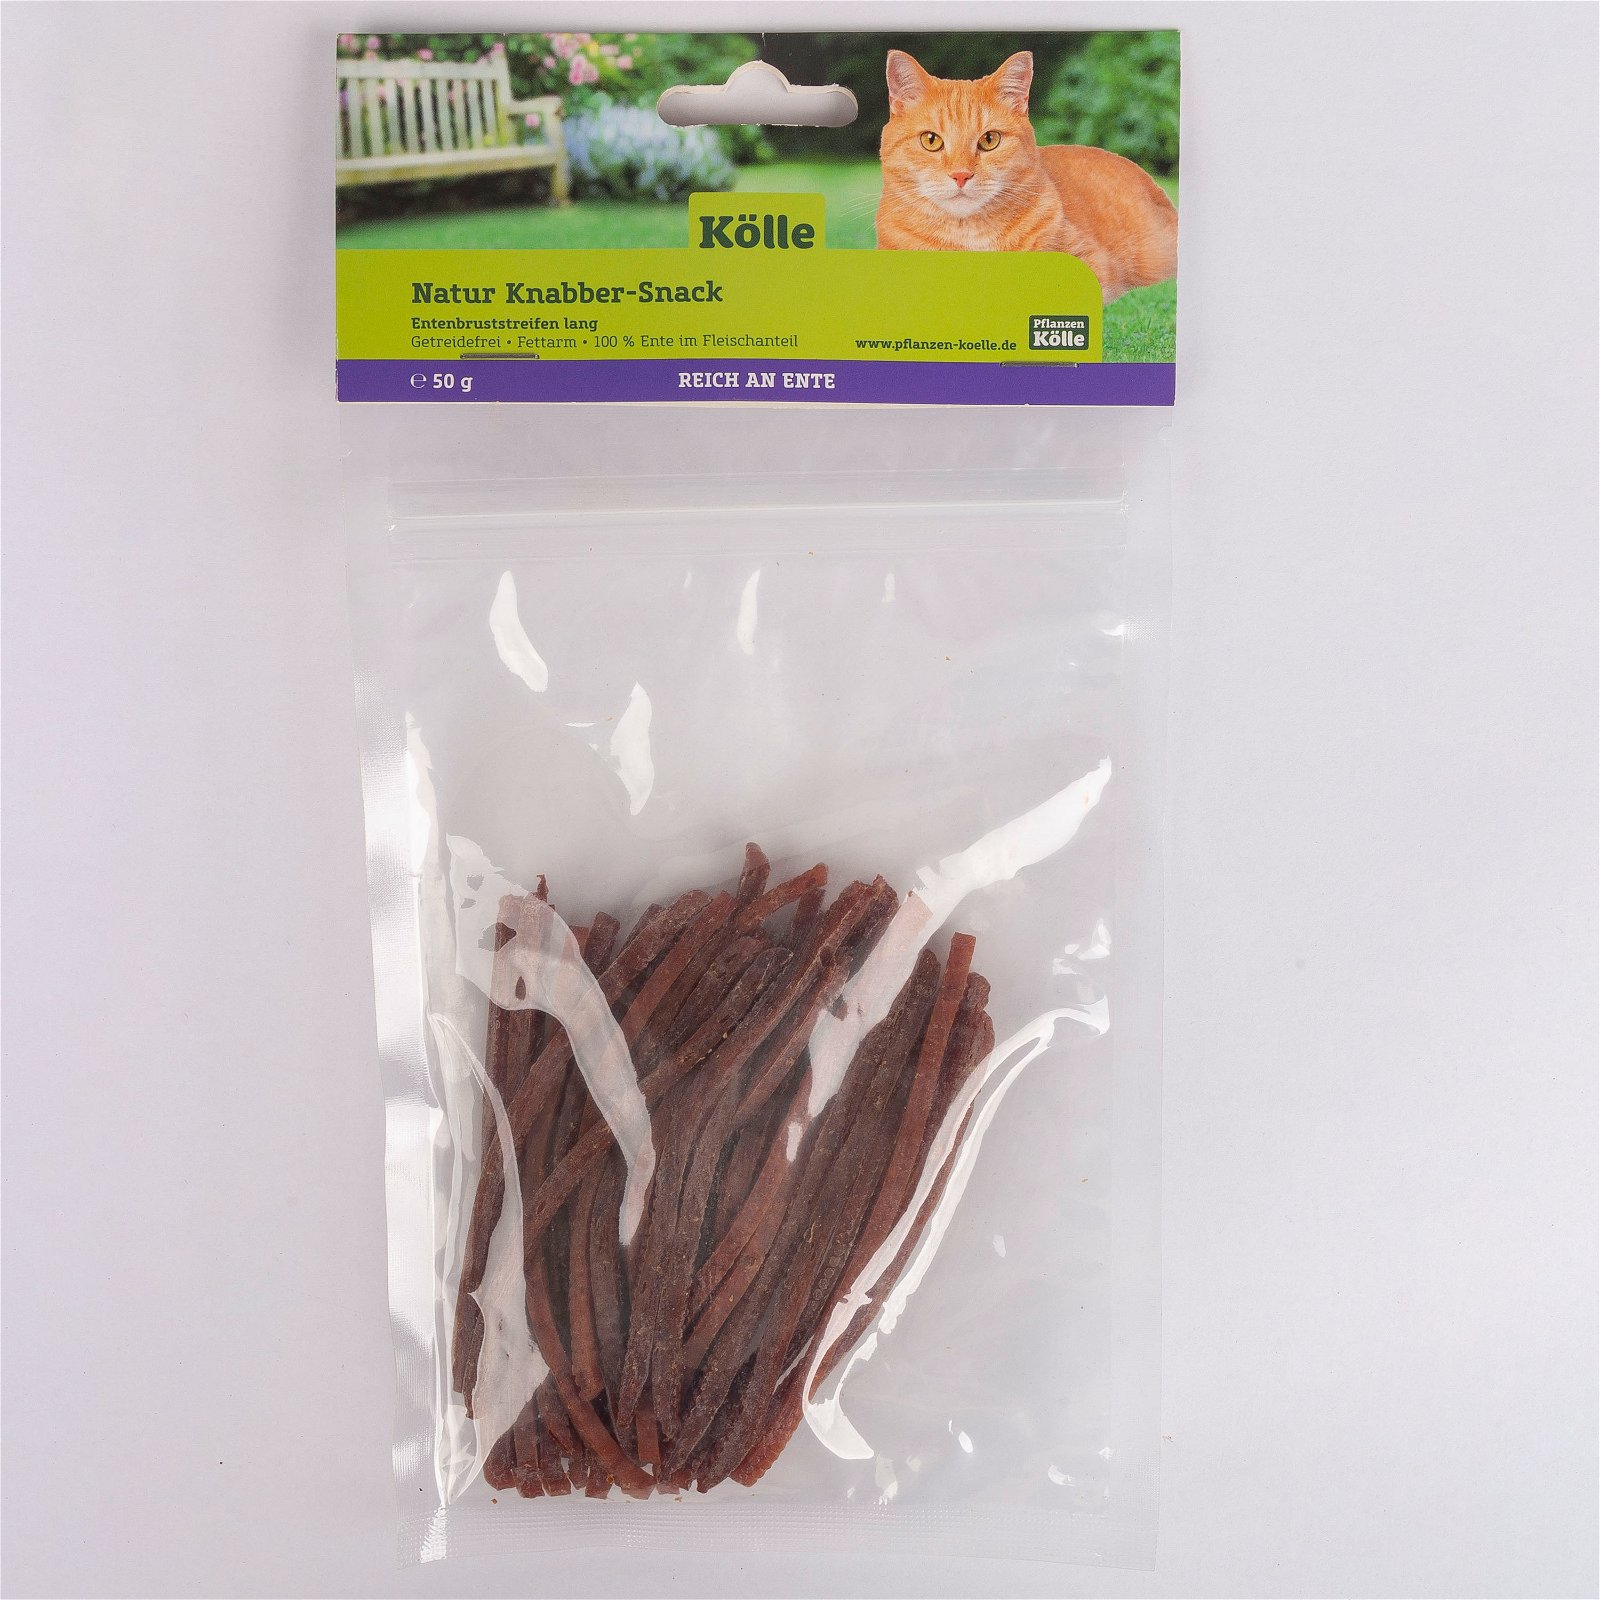 Natur Knabber-Snack für Katzen, Entenbruststreifen lang, 50 g